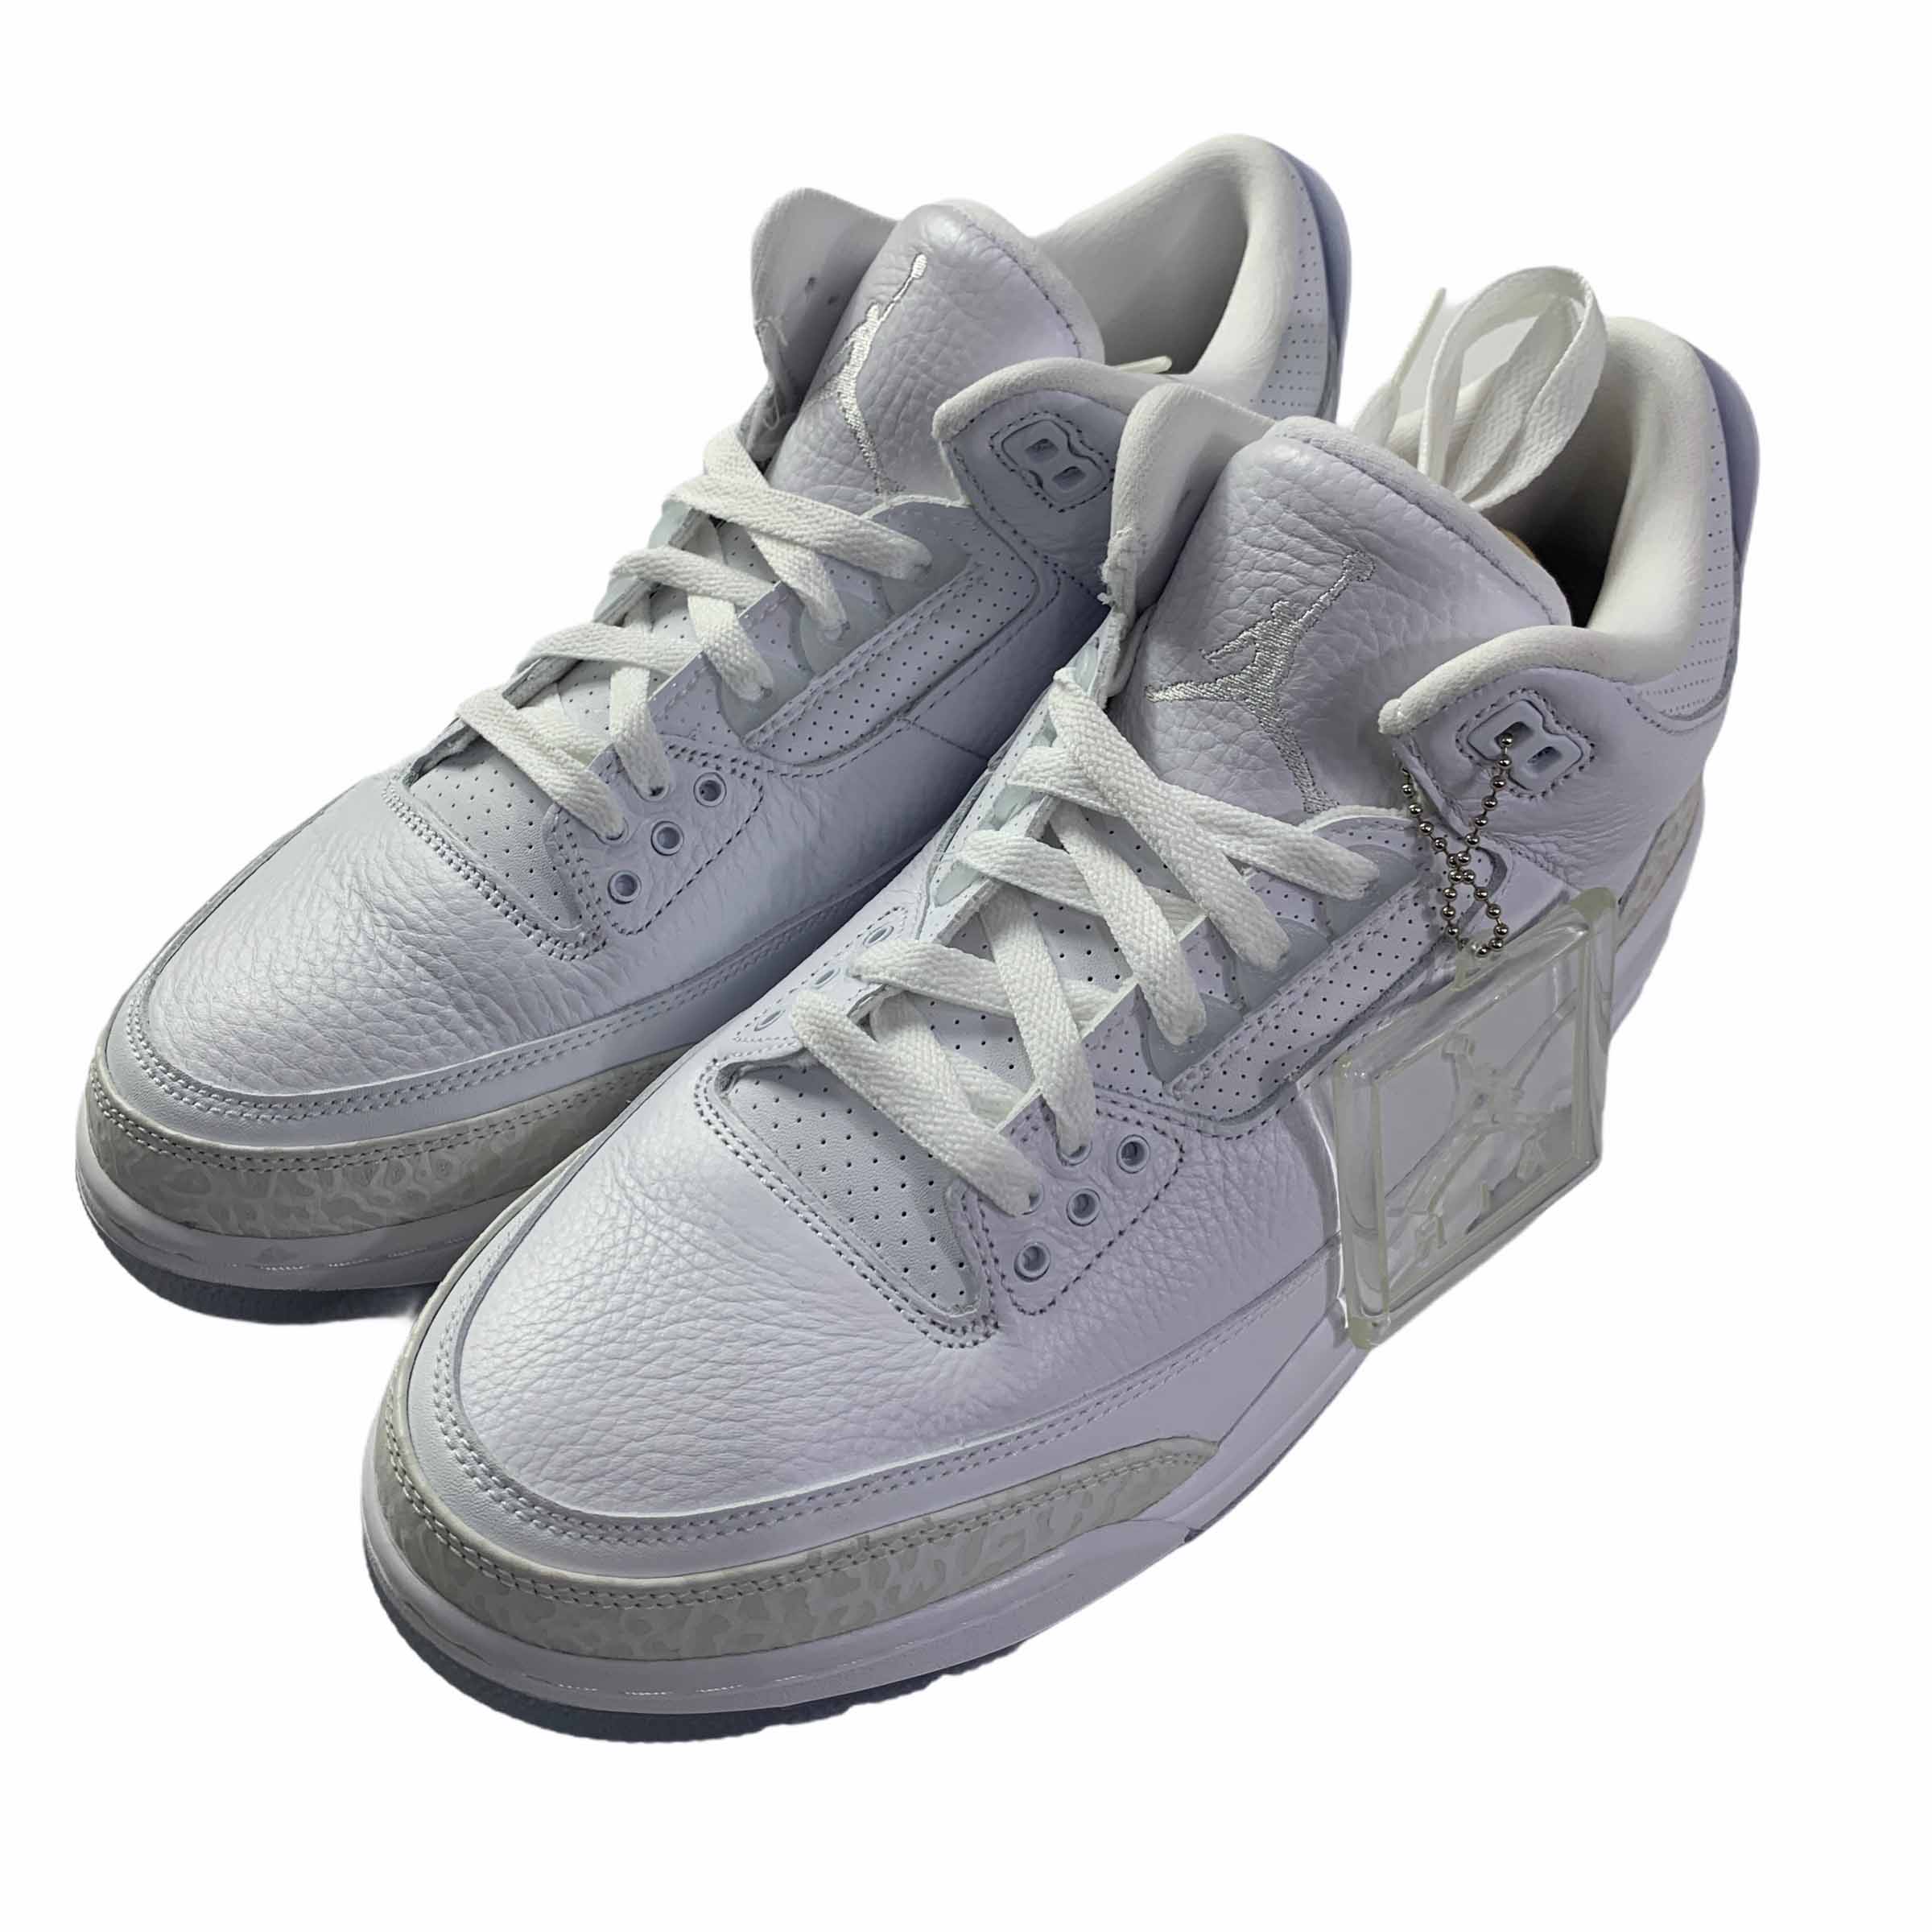 [Nike] Jordan 3 Retro Pure White - Size US10